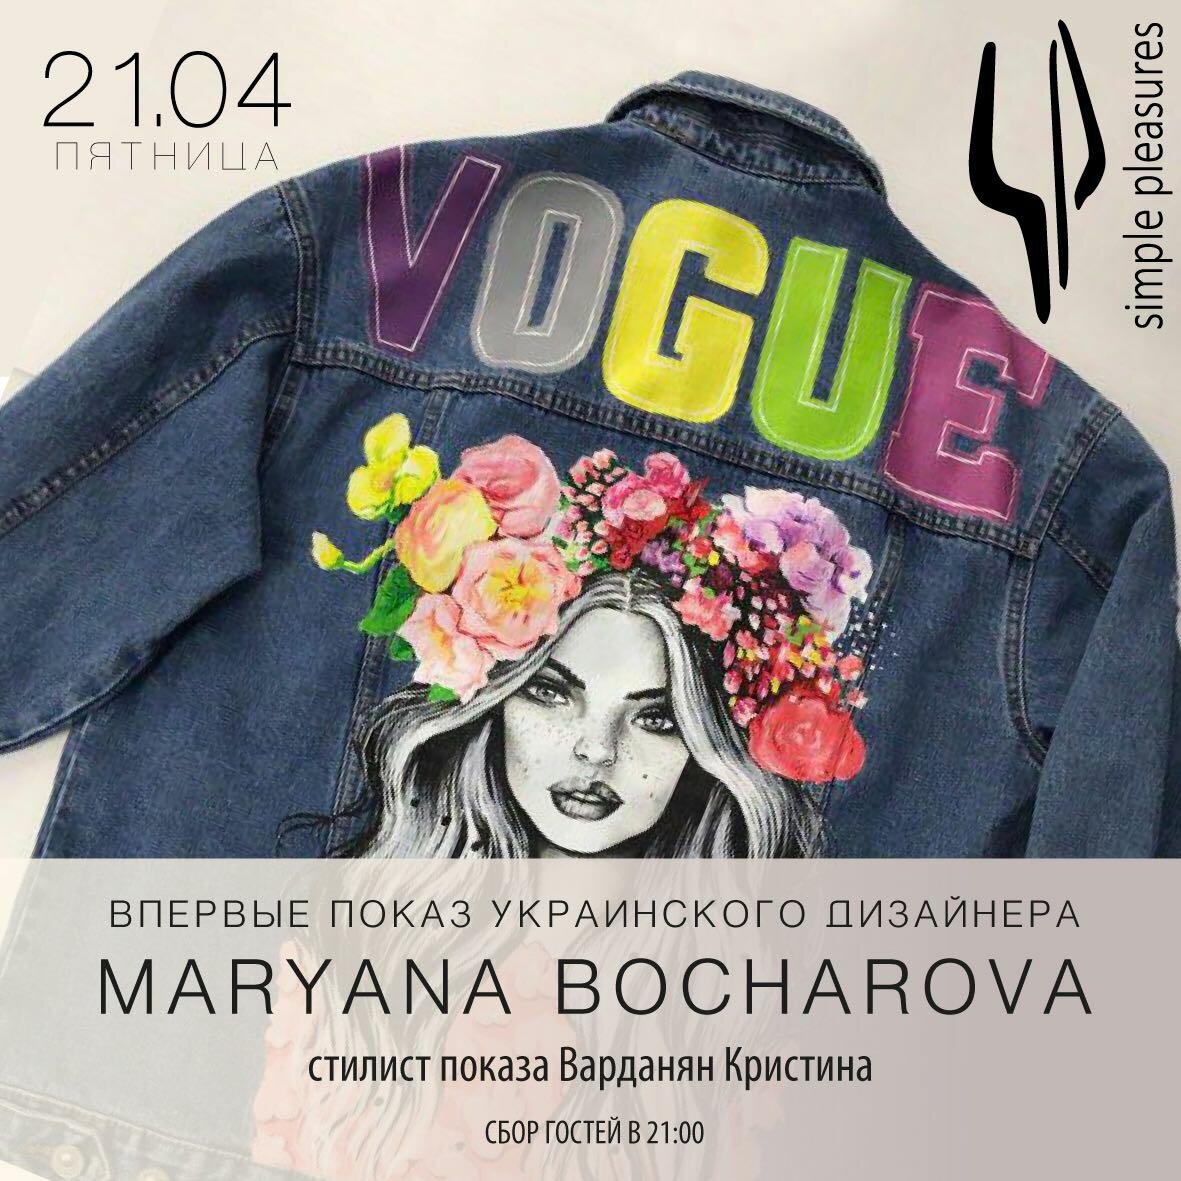 Показ украинского дизайнера Maryana Bocharova